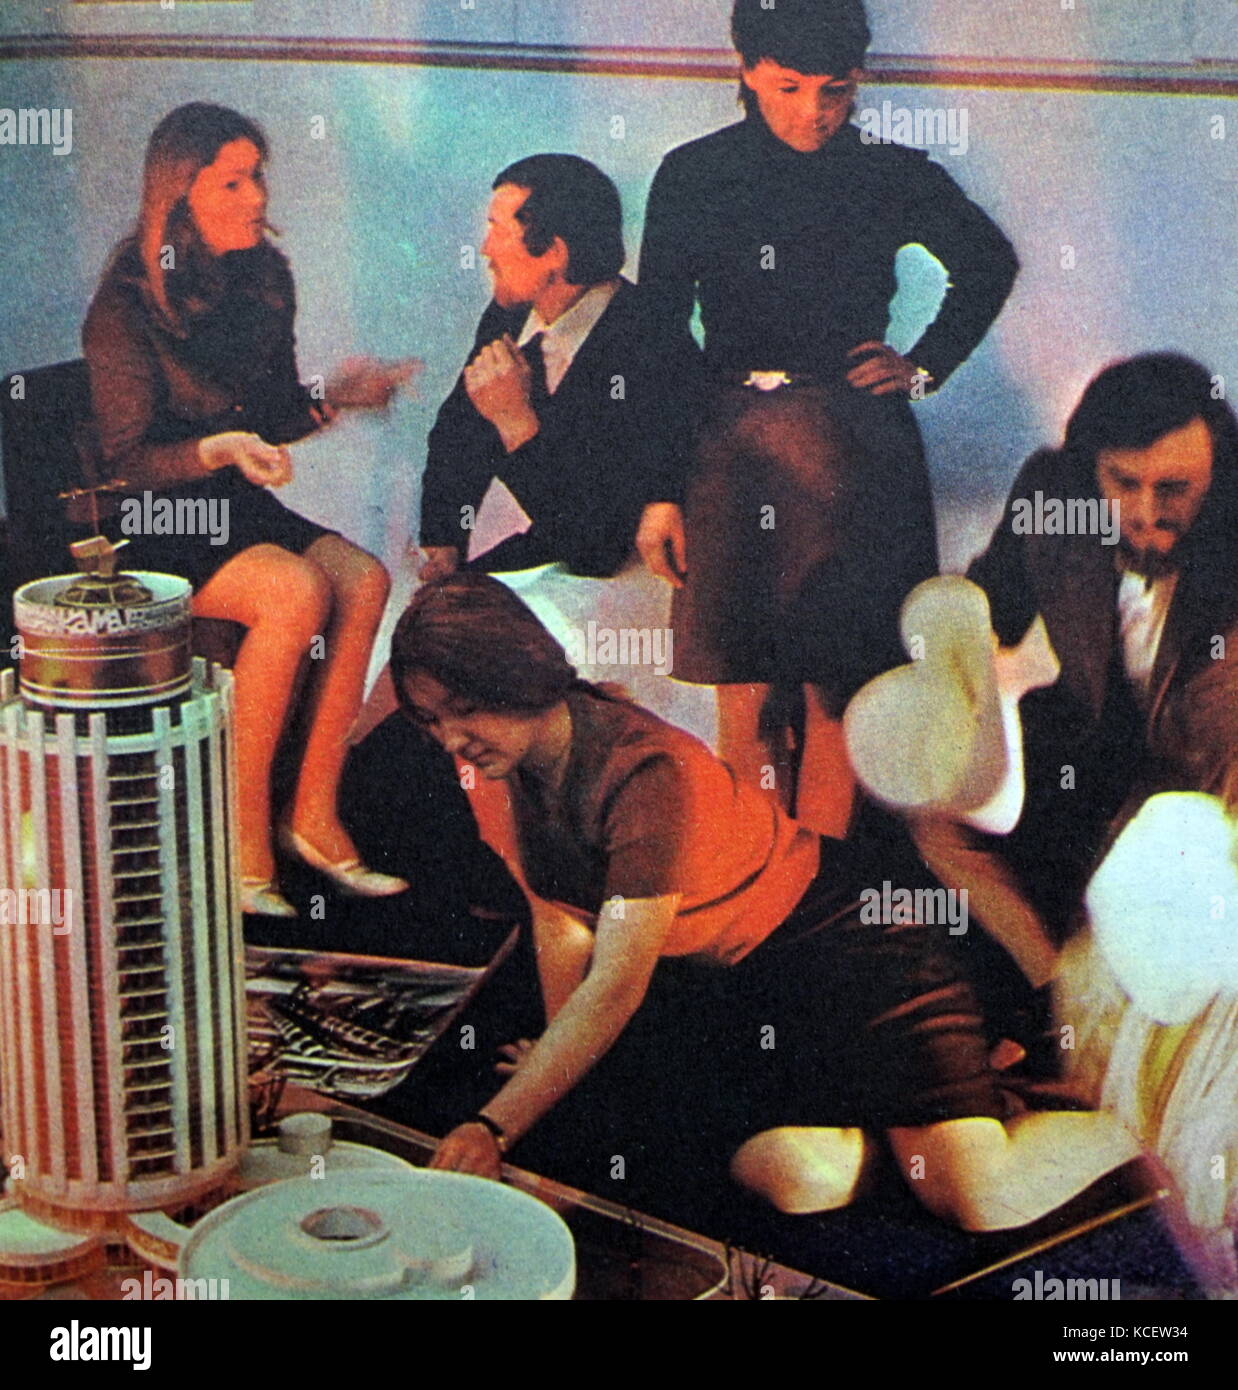 Gruppo della gioventù sovietica, si sono riuniti per ascoltare la musica pop. Circa 1970 Foto Stock